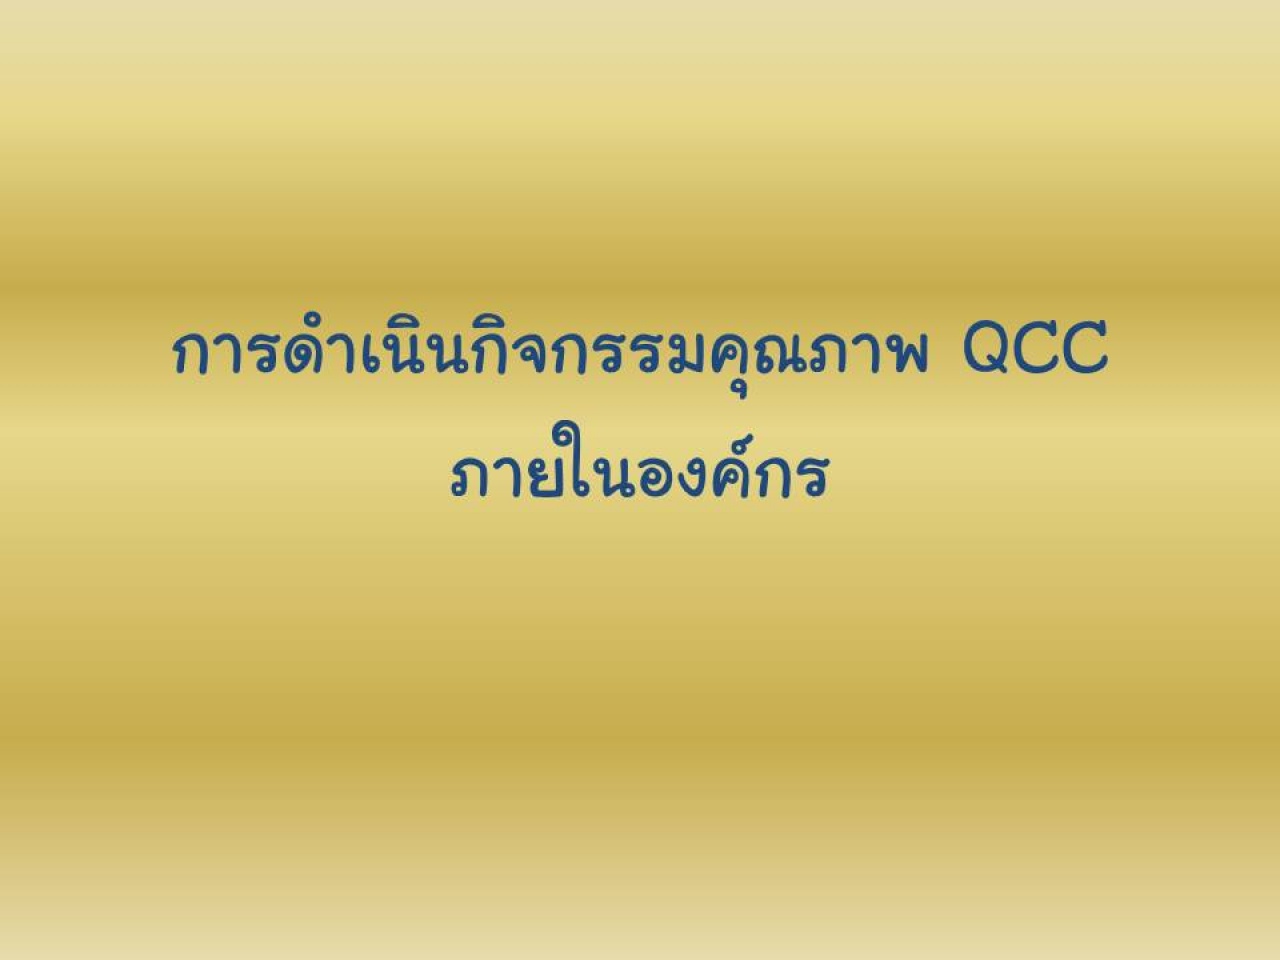 การดำเนินกิจกรรมคุณภาพ QCC ภายในองค์กร